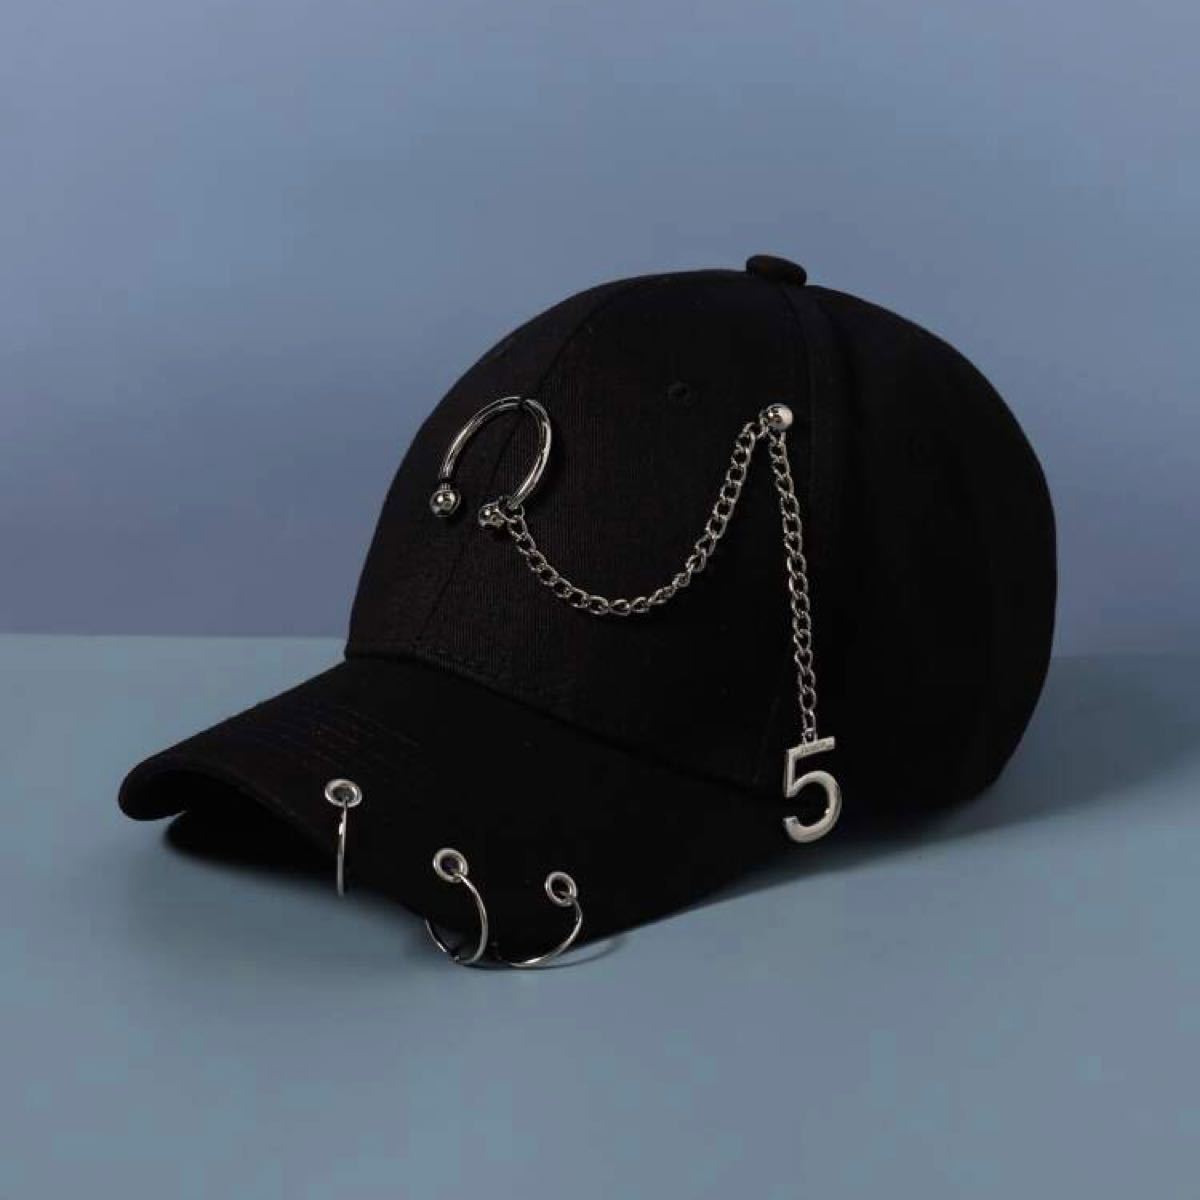 ストリート 帽子 キャップ 韓国 ユニセックス 飾り ブラック キャップ